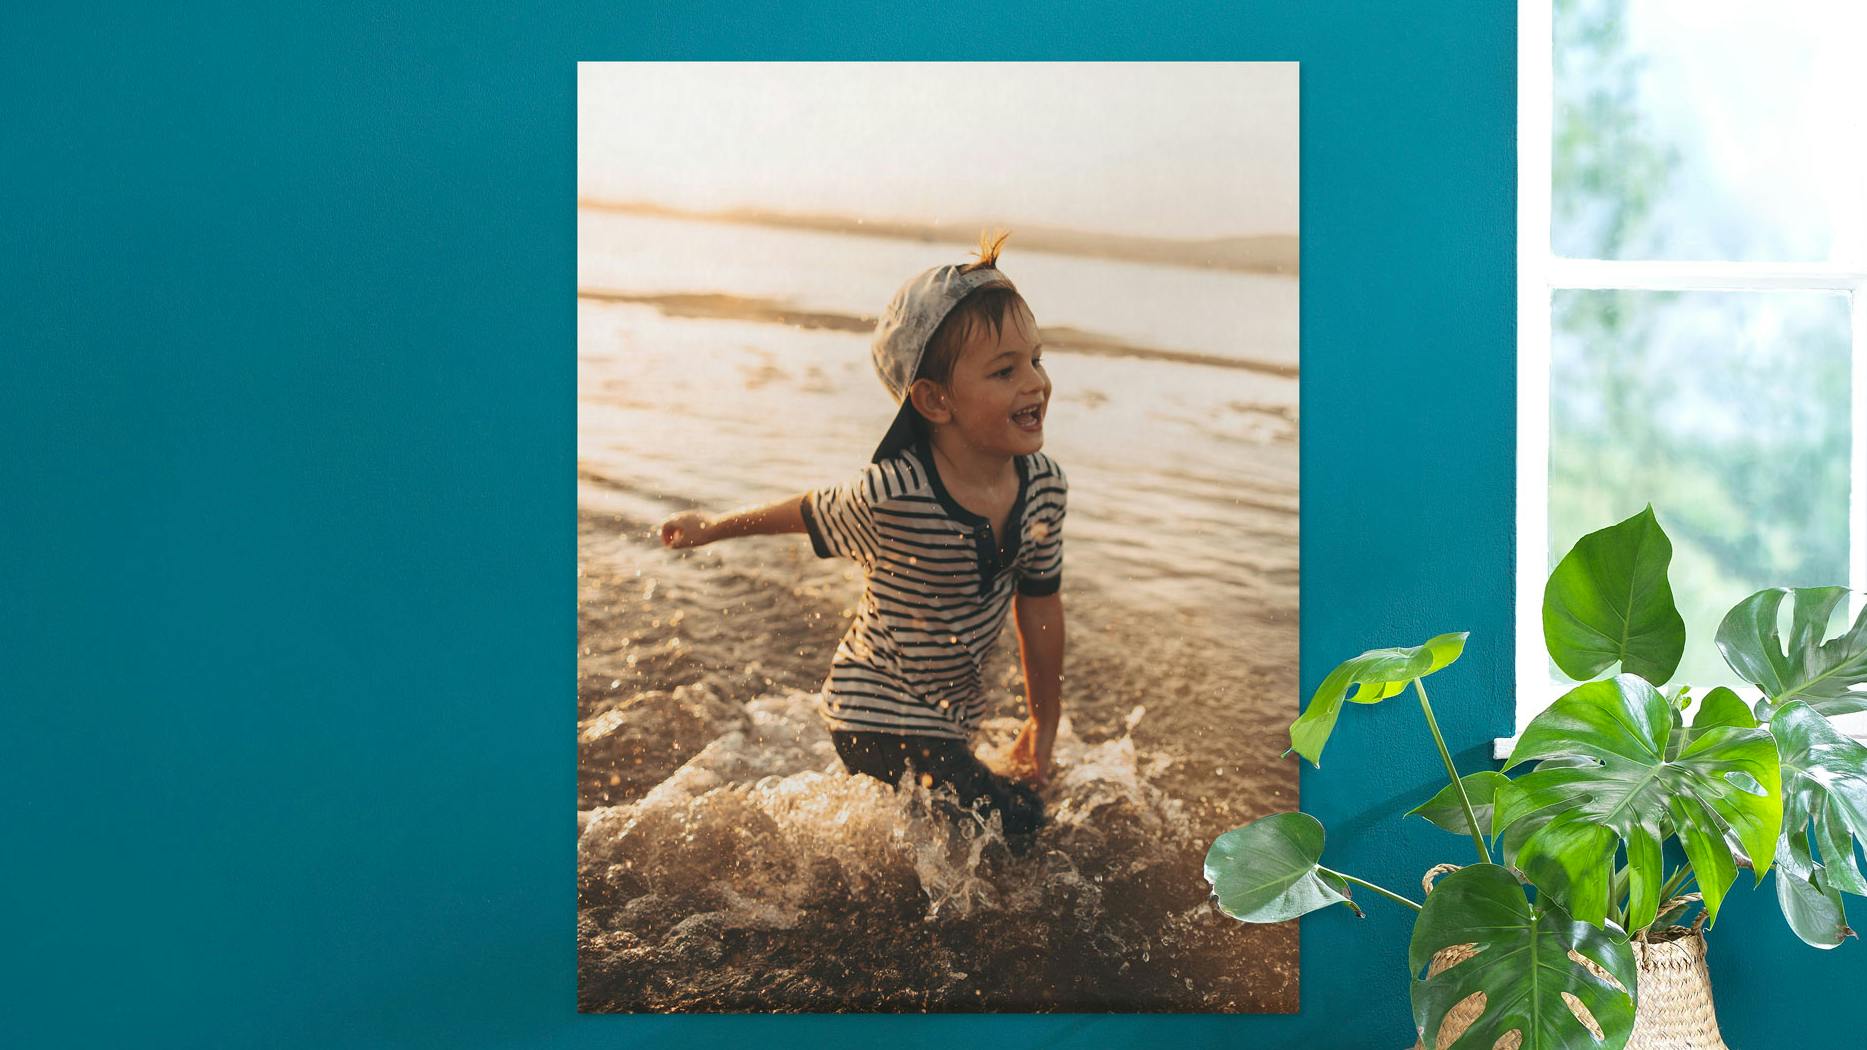 Gepersonaliseerde fotoposter met een klein jongetje op het strand aan een petrol muur